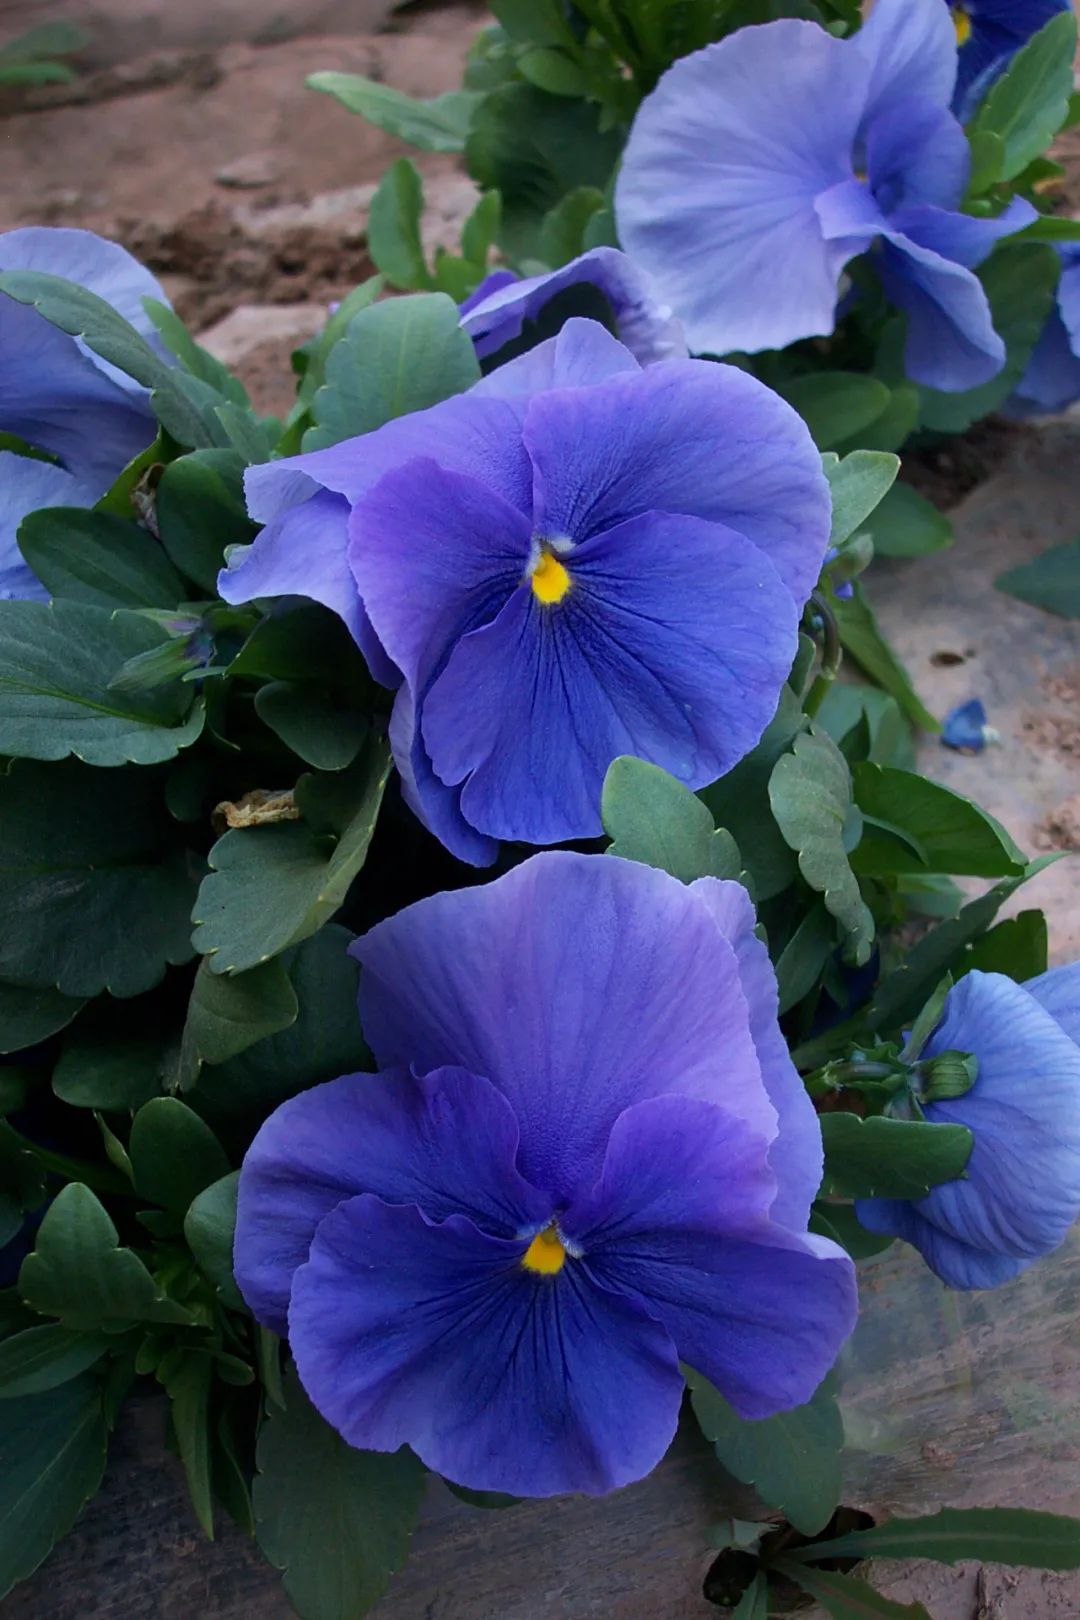 这波蓝紫色系花卉,太美了!